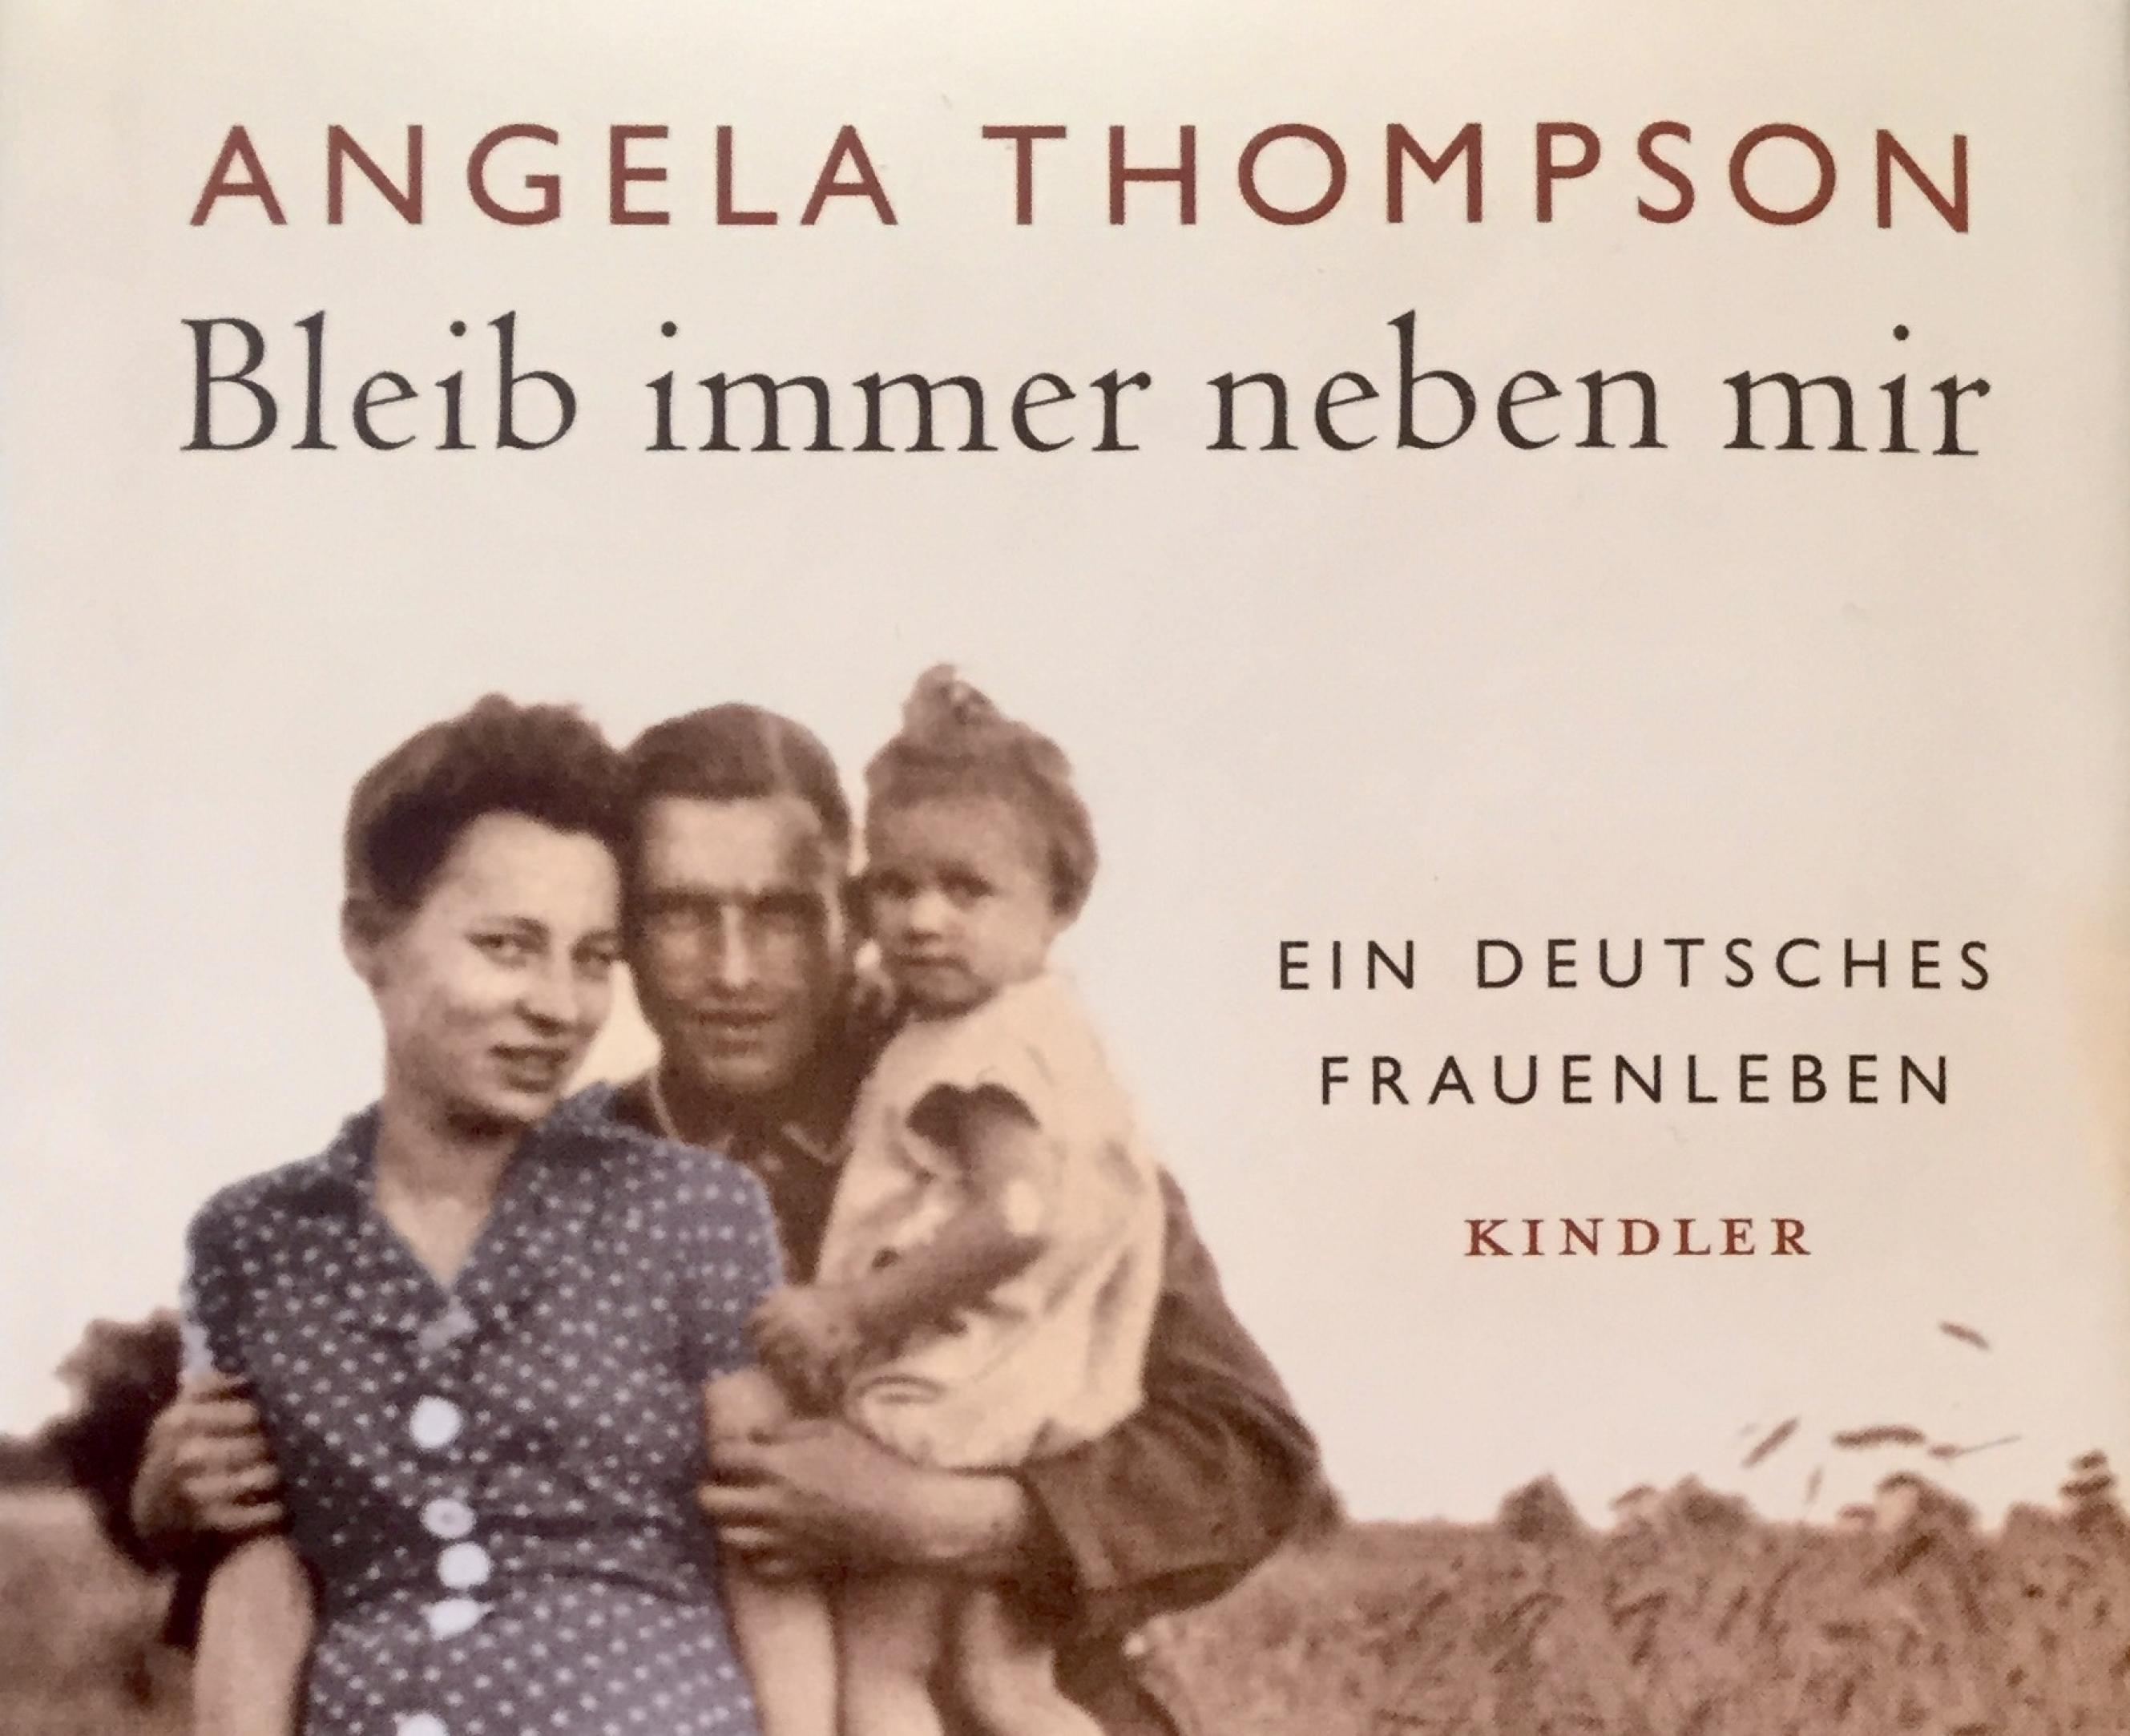 Ausschnitt des Buchtitels von Angela Thompsons Buch über das Leben ihrer Mutter: „Bleib immer neben mir.“ Es zeigt Angela als Kleinkind im weißen Sommerkleid auf dem Arm ihres Vaters. Die Mutter trägt ein Pünktchen-Kleid. Der Vater hält beide nah an sich, alle drei schauen in die Kamera.